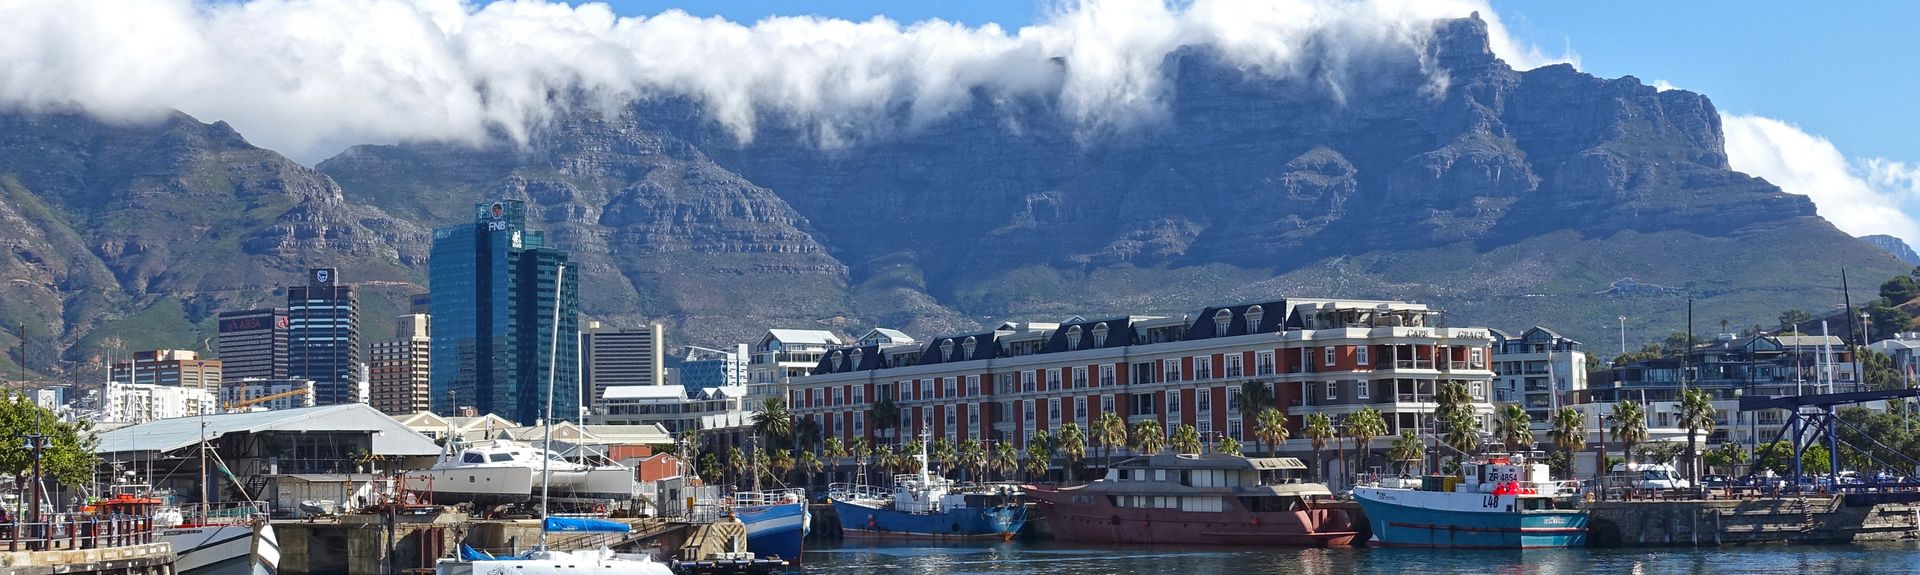 Ferienwohnung Gardens Cape Town Ferienwohnungen Mehr Fewo Direkt